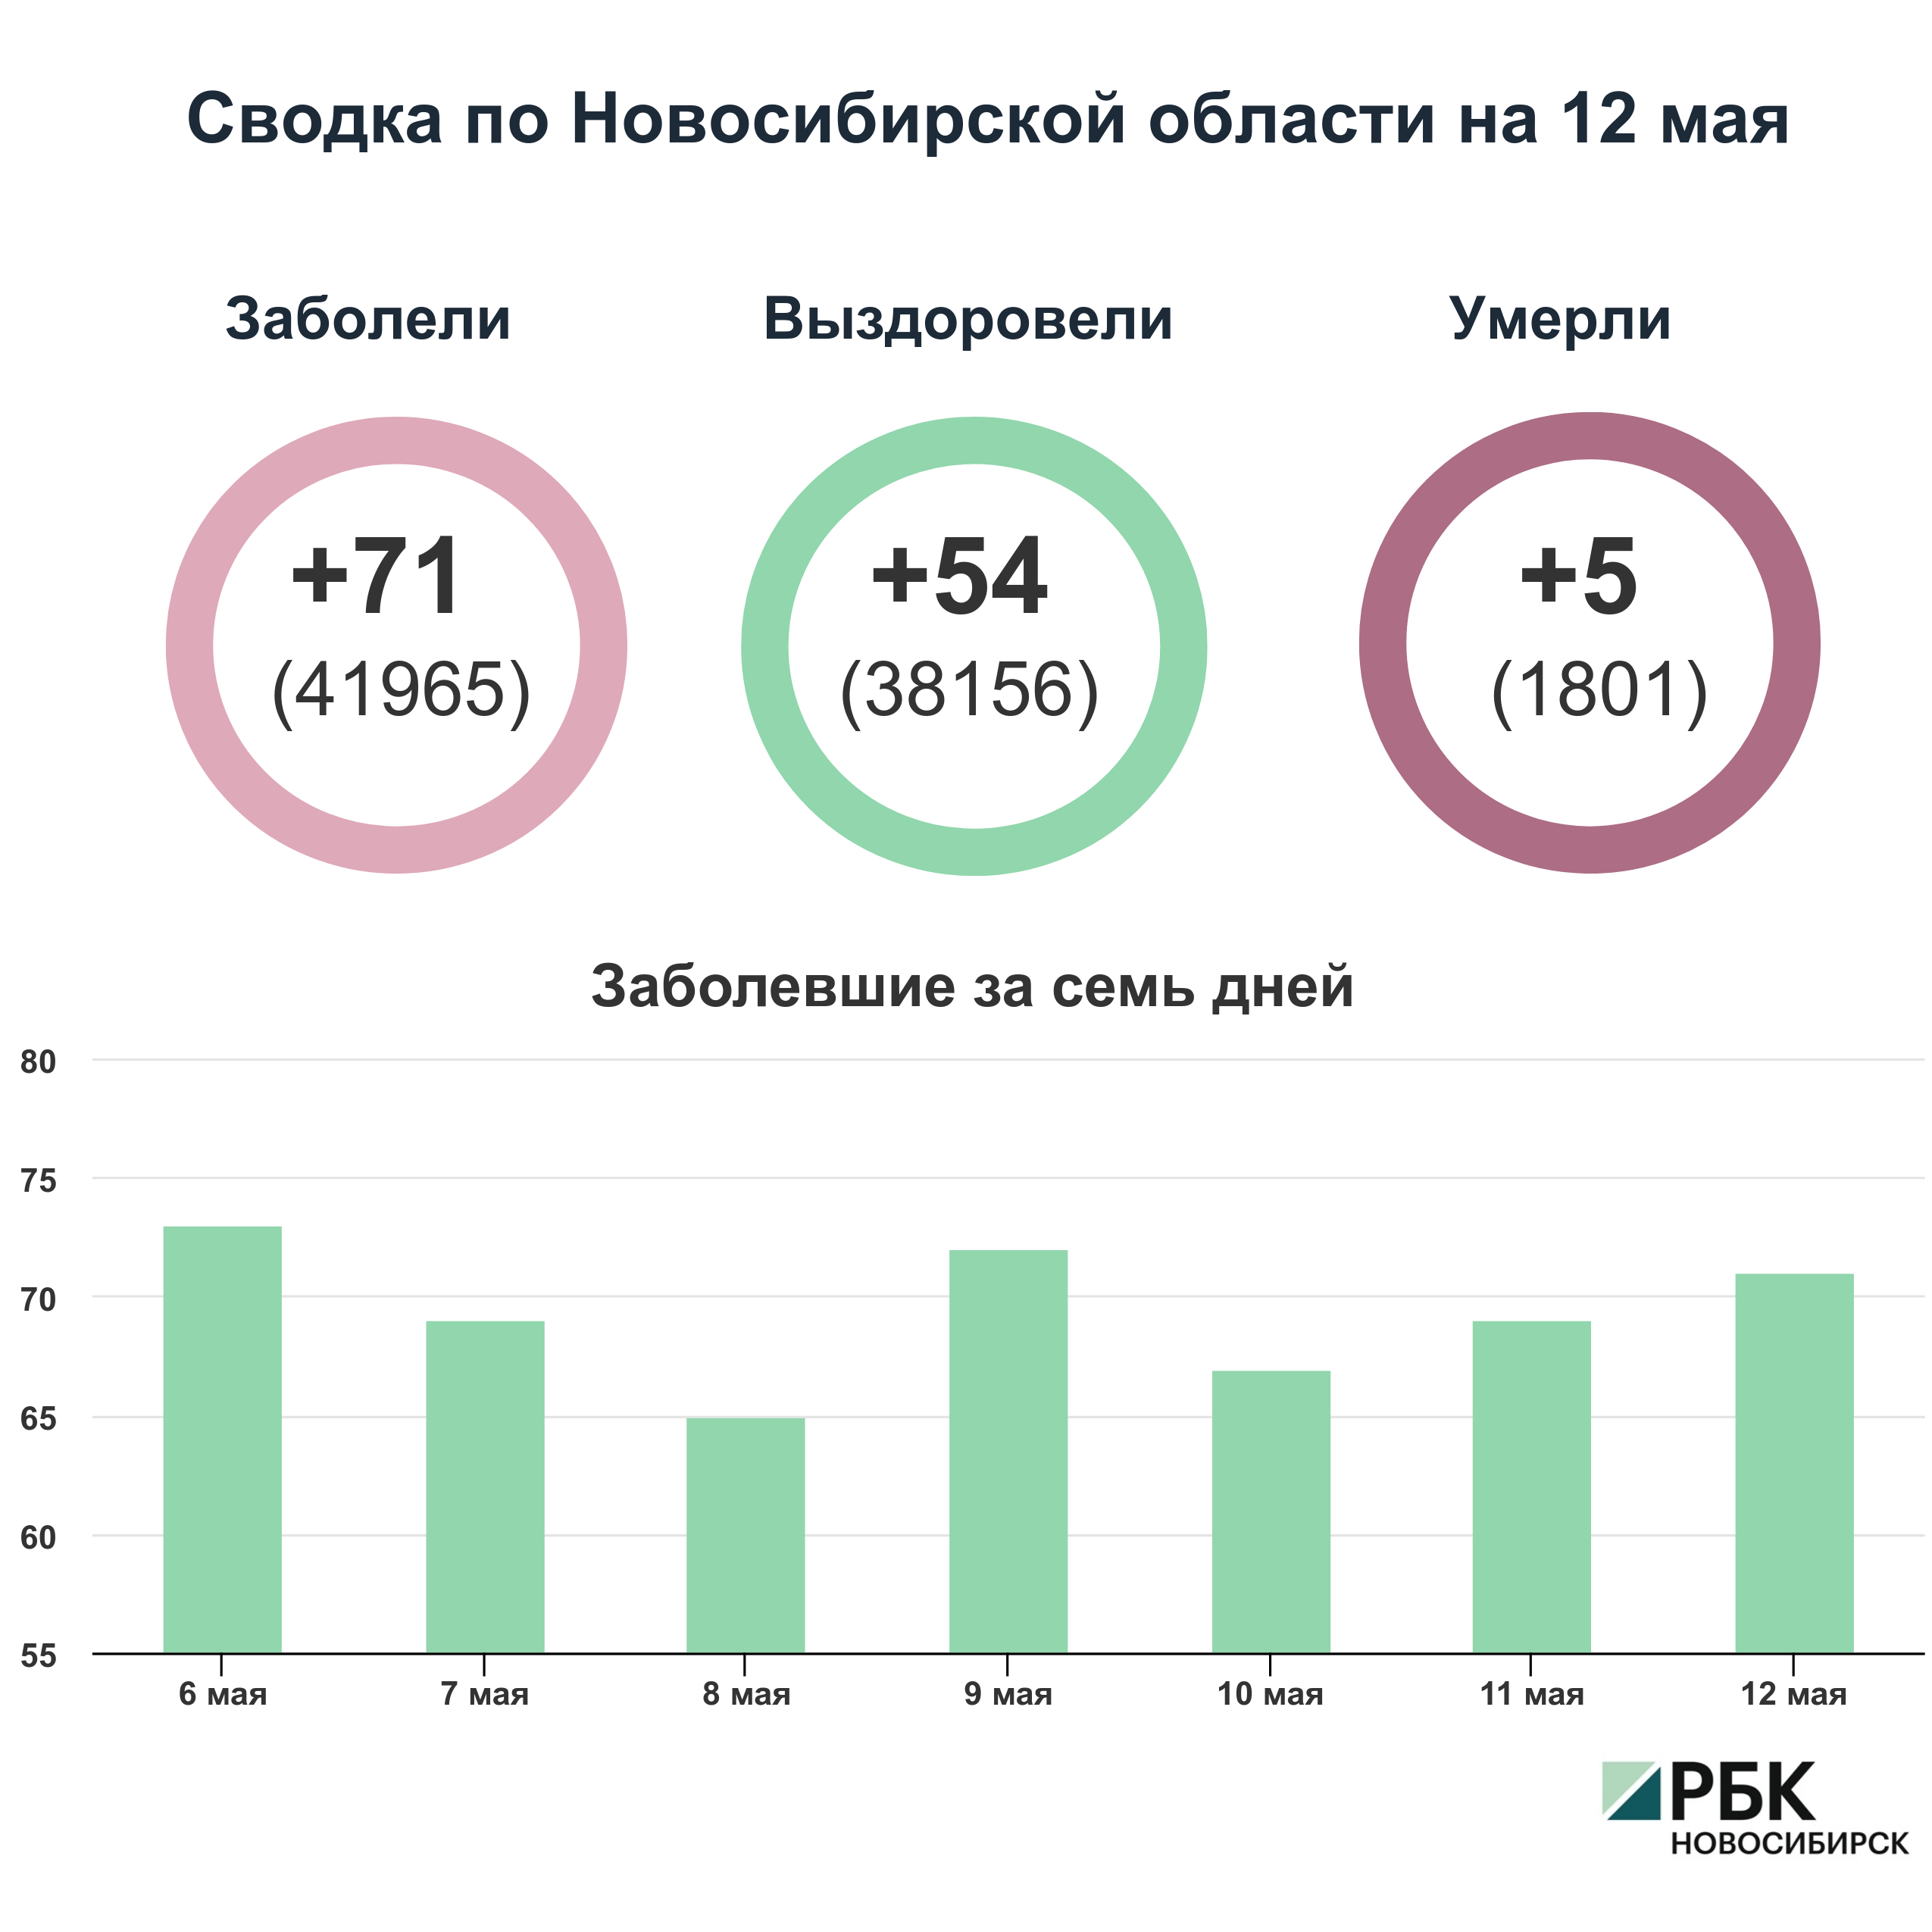 Коронавирус в Новосибирске: сводка на 12 мая